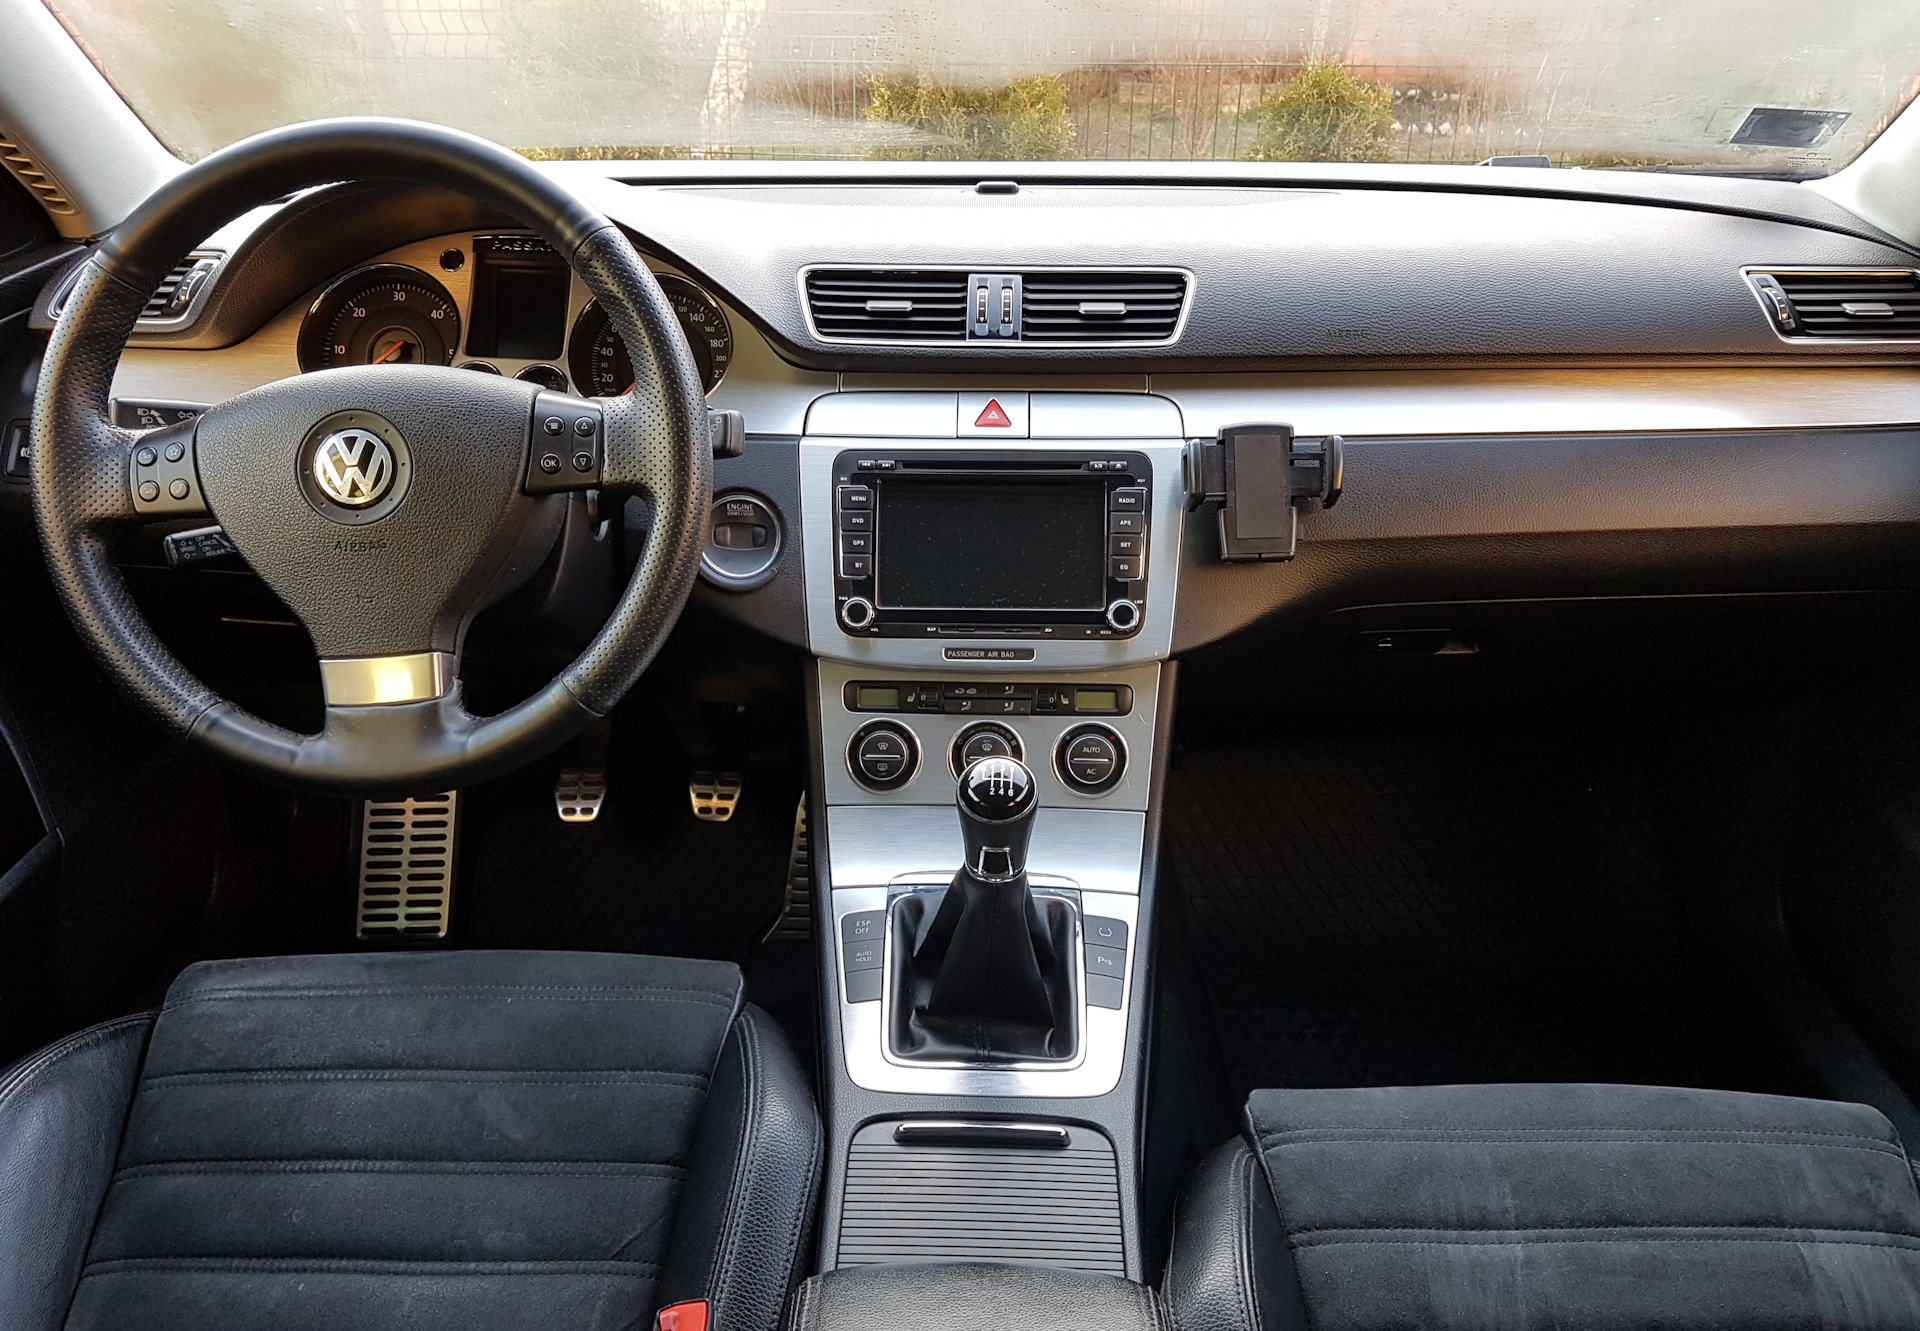 Купить пассат б6 1.8. VW Passat b6 салон. Фольксваген Пассат б6 2008 салон. WV Passat b6 салон. Volkswagen Passat b6 Interior.